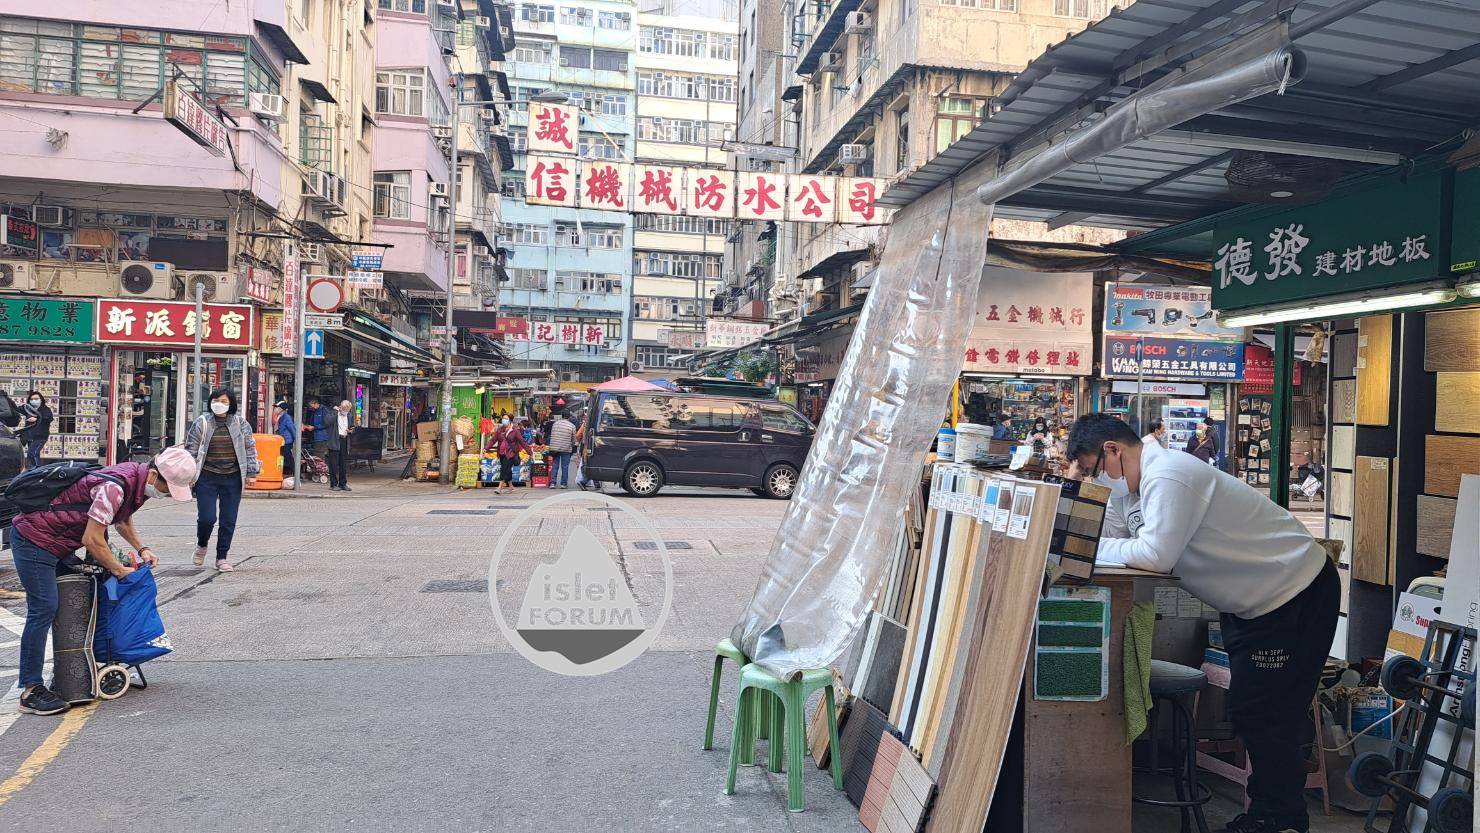 上海街廣東道之間的快富街小販檔 Fife Street Hawker Stall (10).jpg